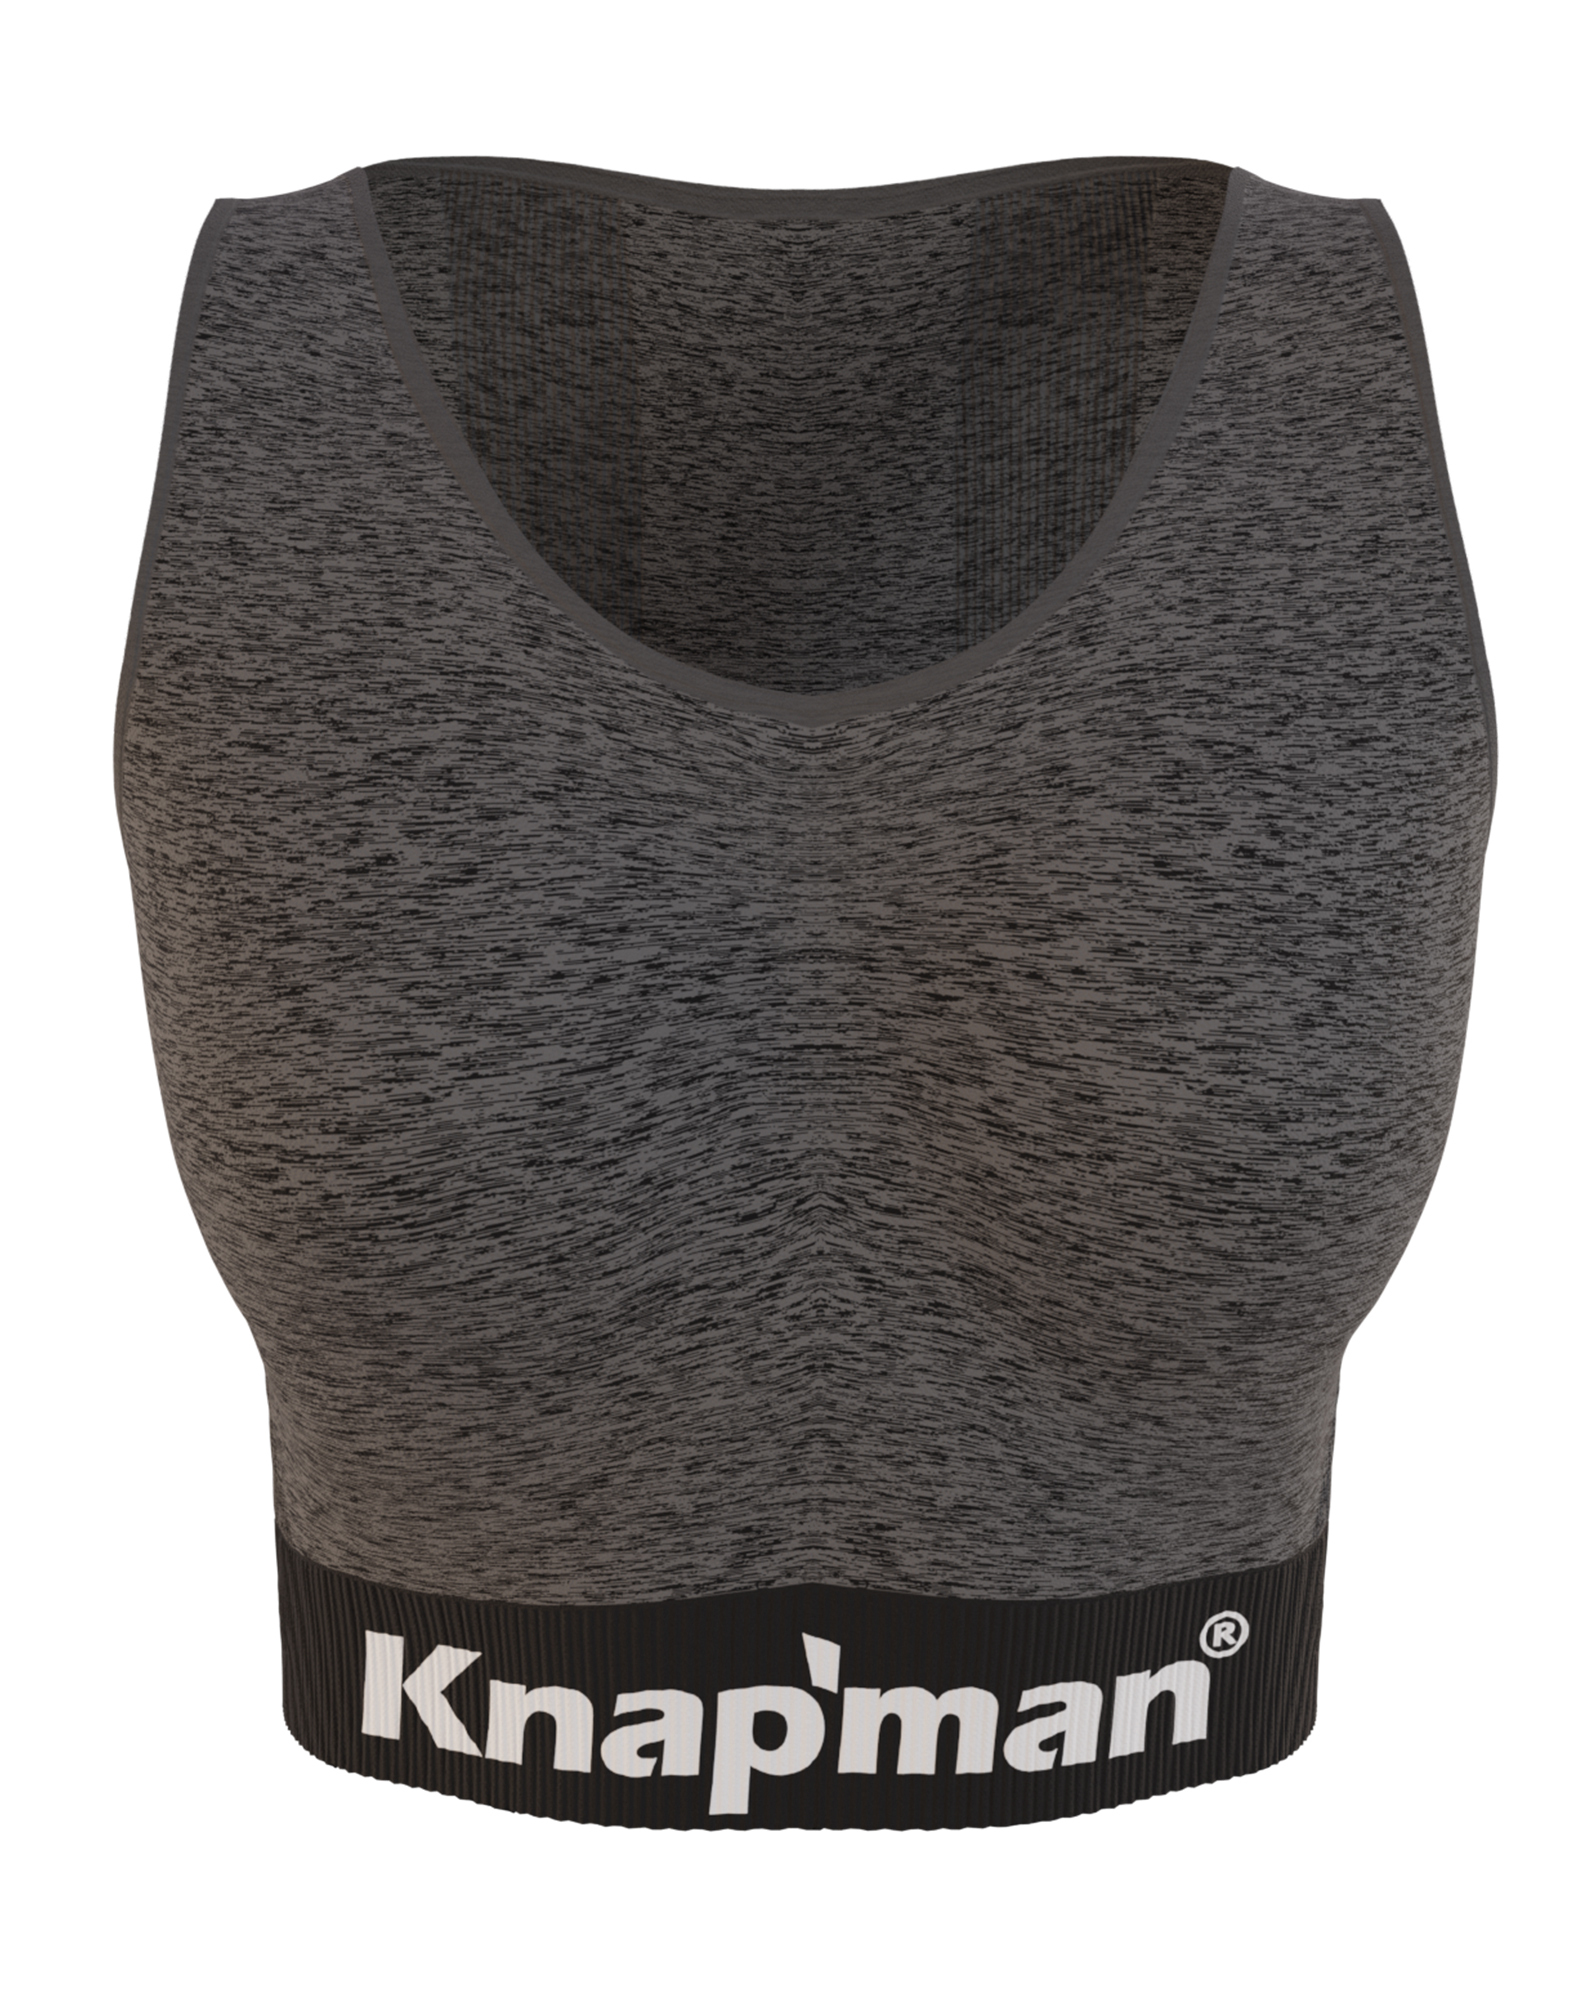 Knap'man FitForm Compression Sports Legging